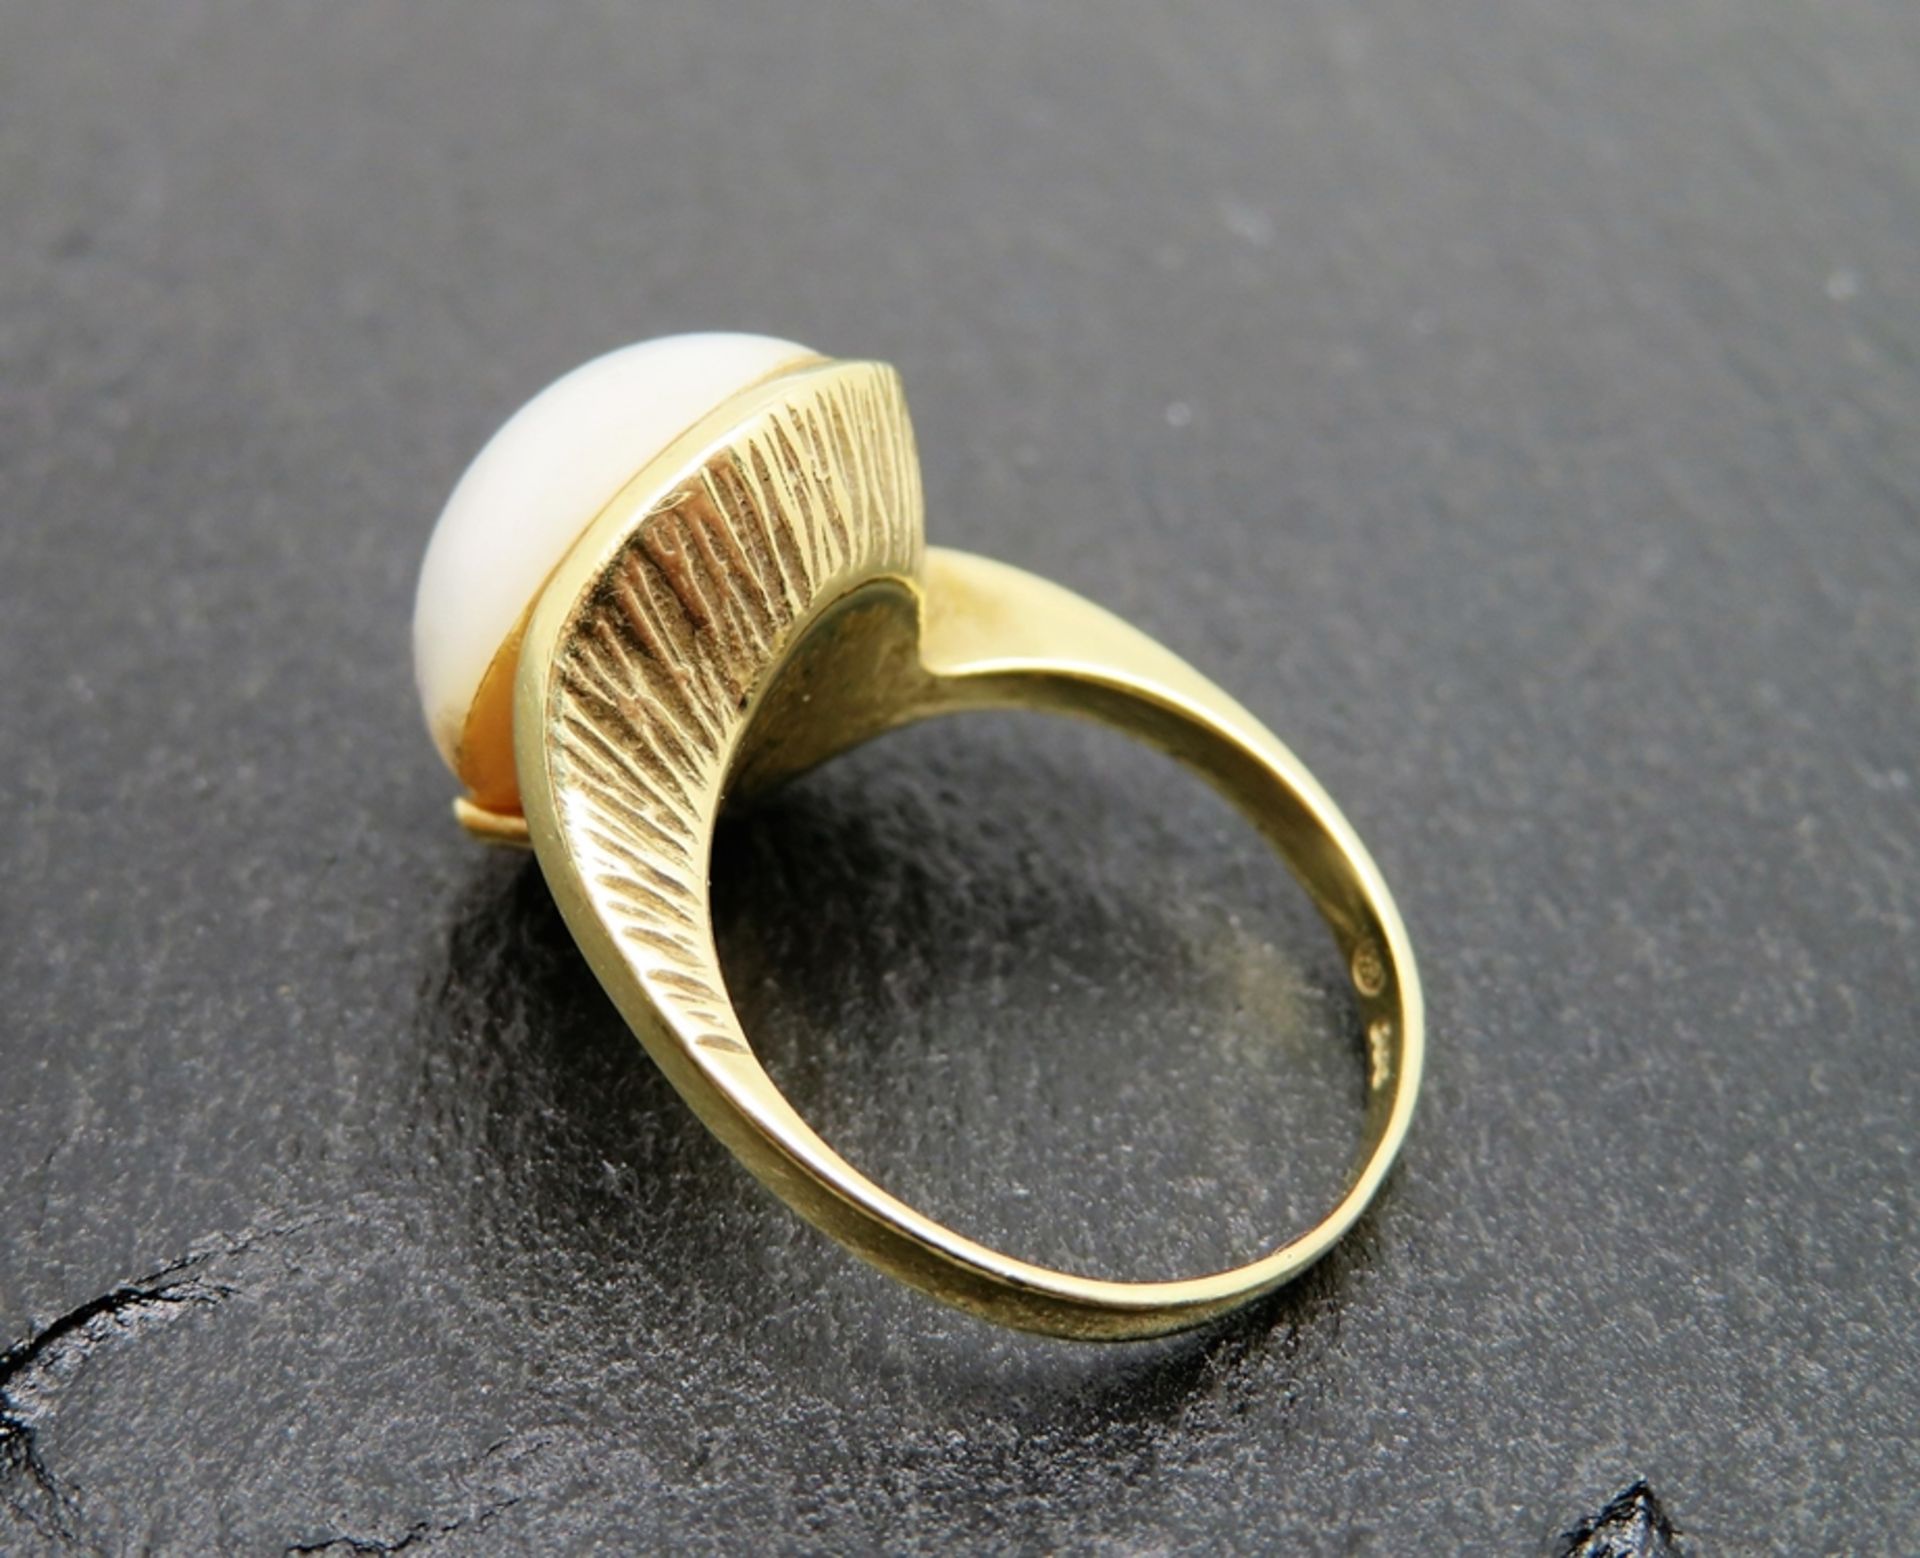 Zeitloser Cross-Over-Ring mit Mabéperle, Gelbgold 585/000, punziert, 8 g, Goldschmiedemonogr. "HR", - Bild 2 aus 2